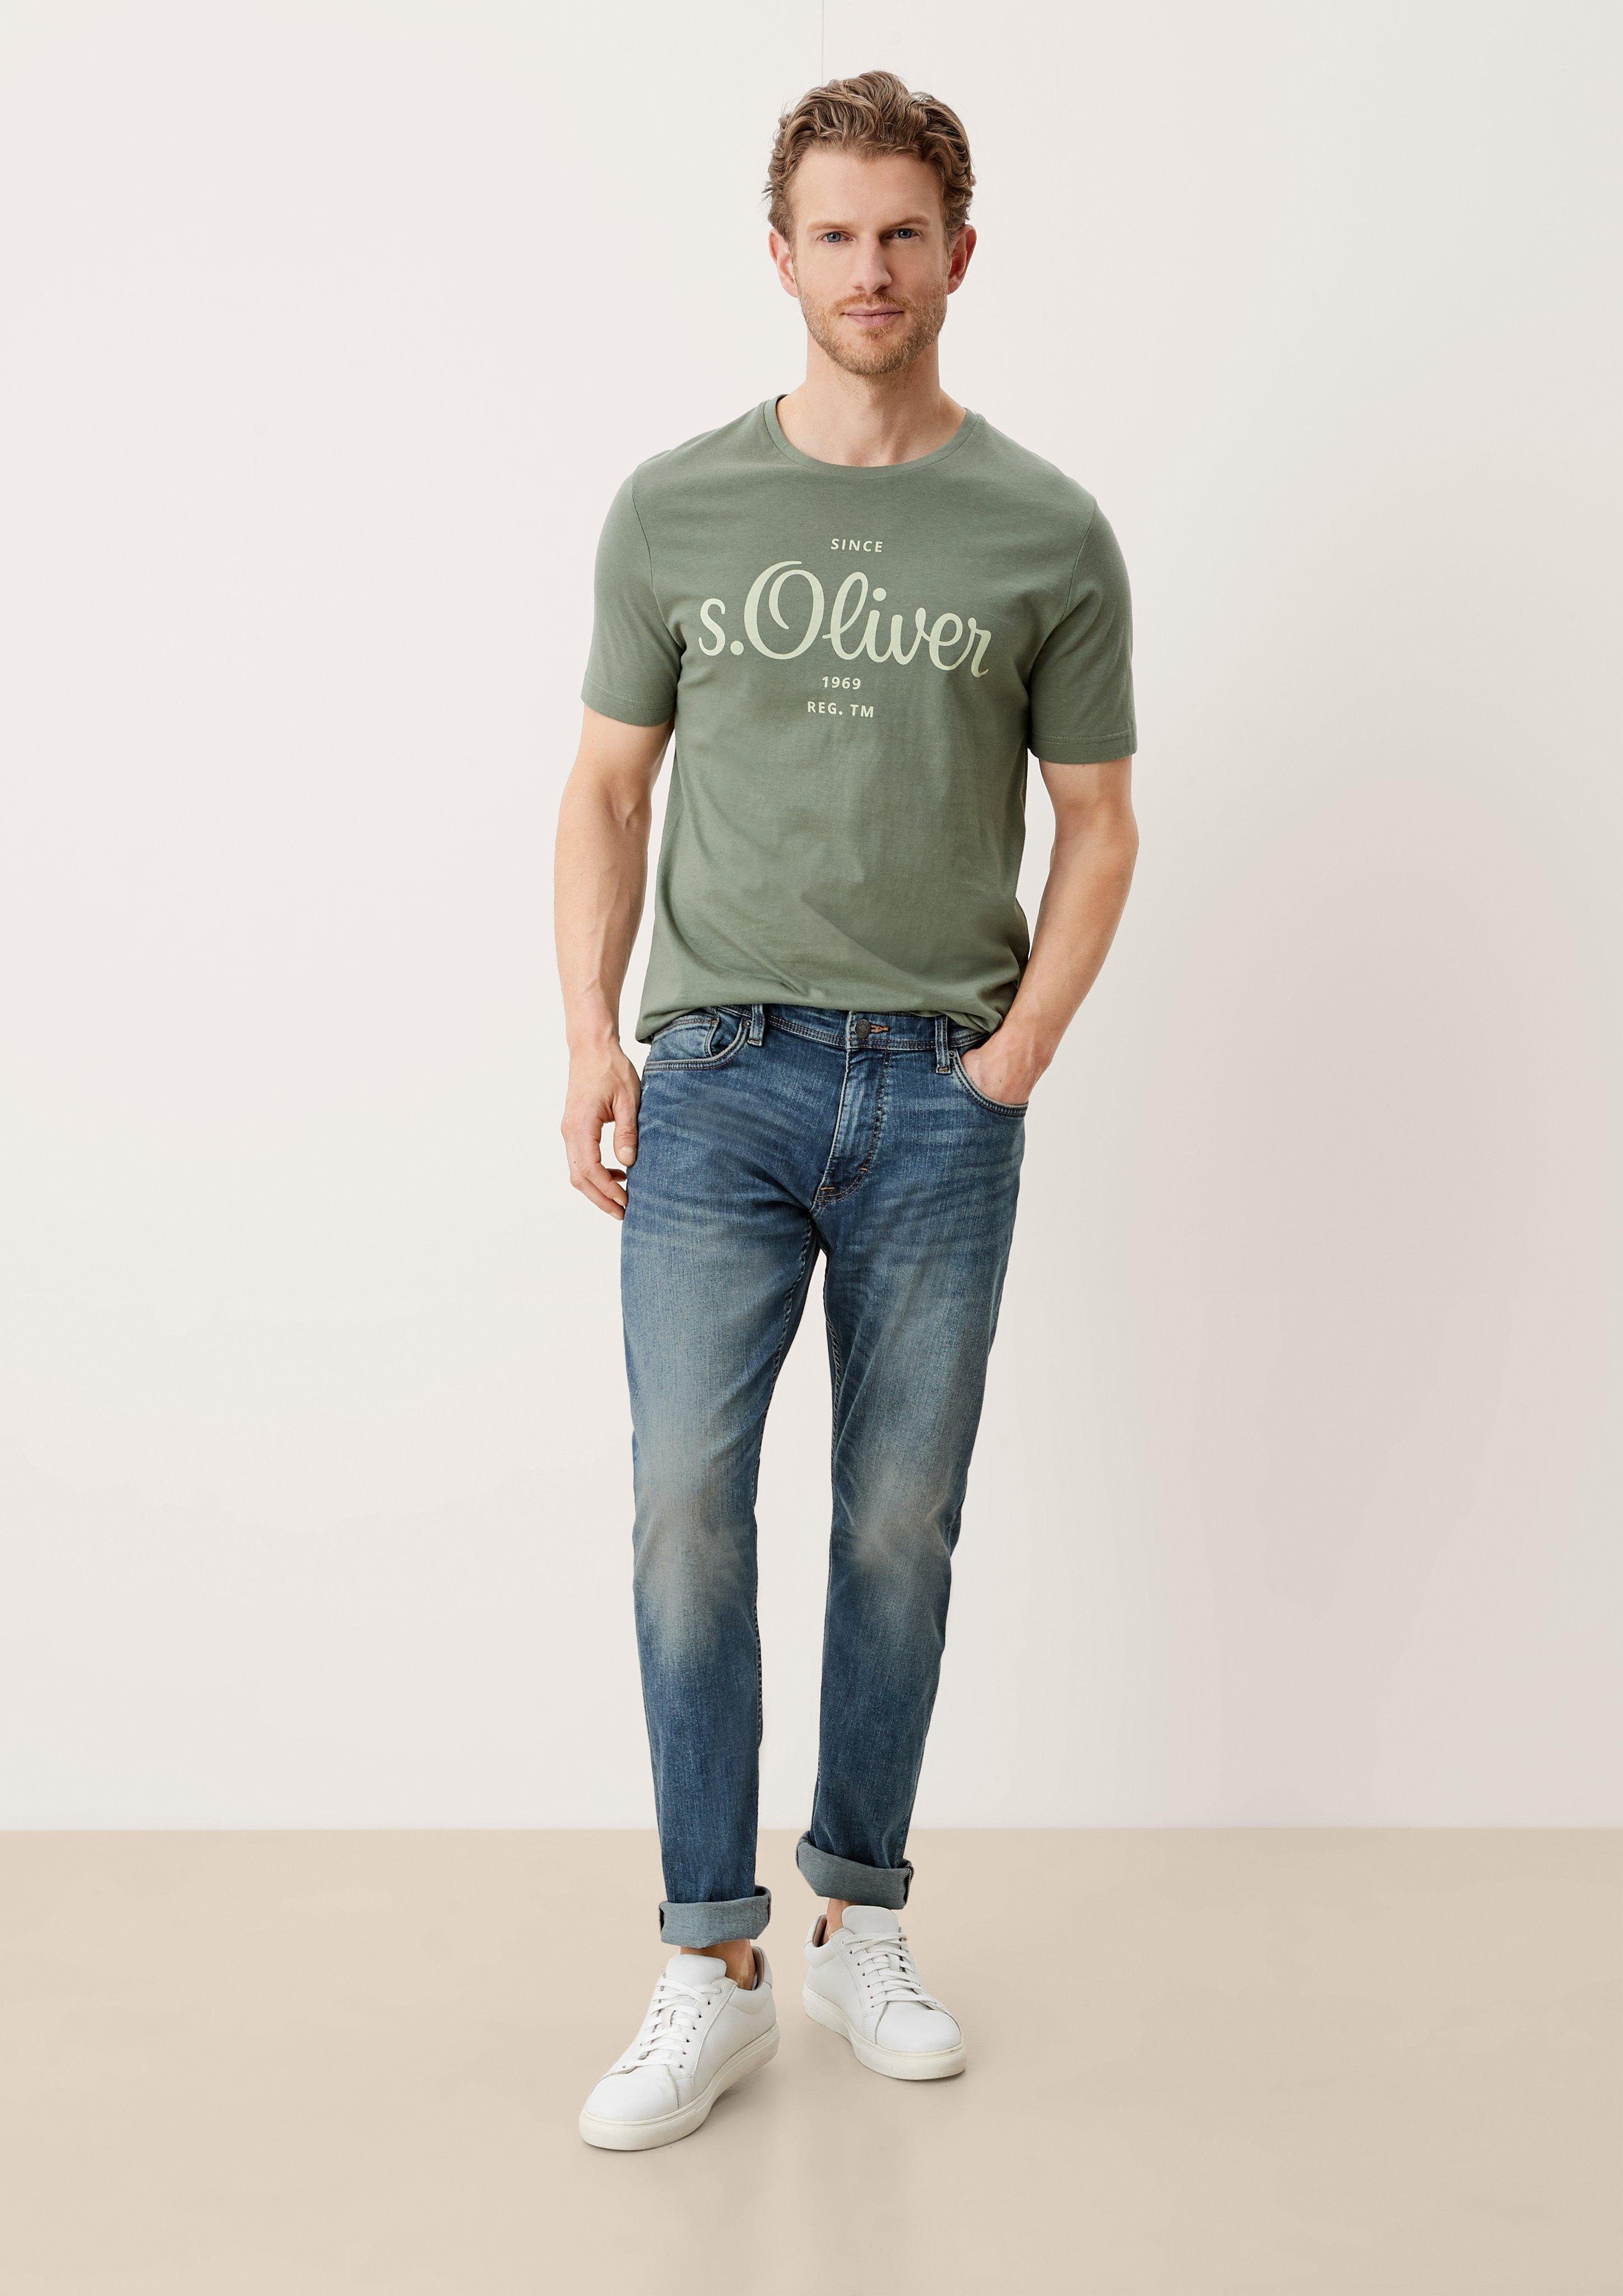 s.Oliver 5-Pocket-Jeans Fit sretche Mid Keith Leg blue light Rise / / Slim Waschung Destroyes, / Jeans Slim